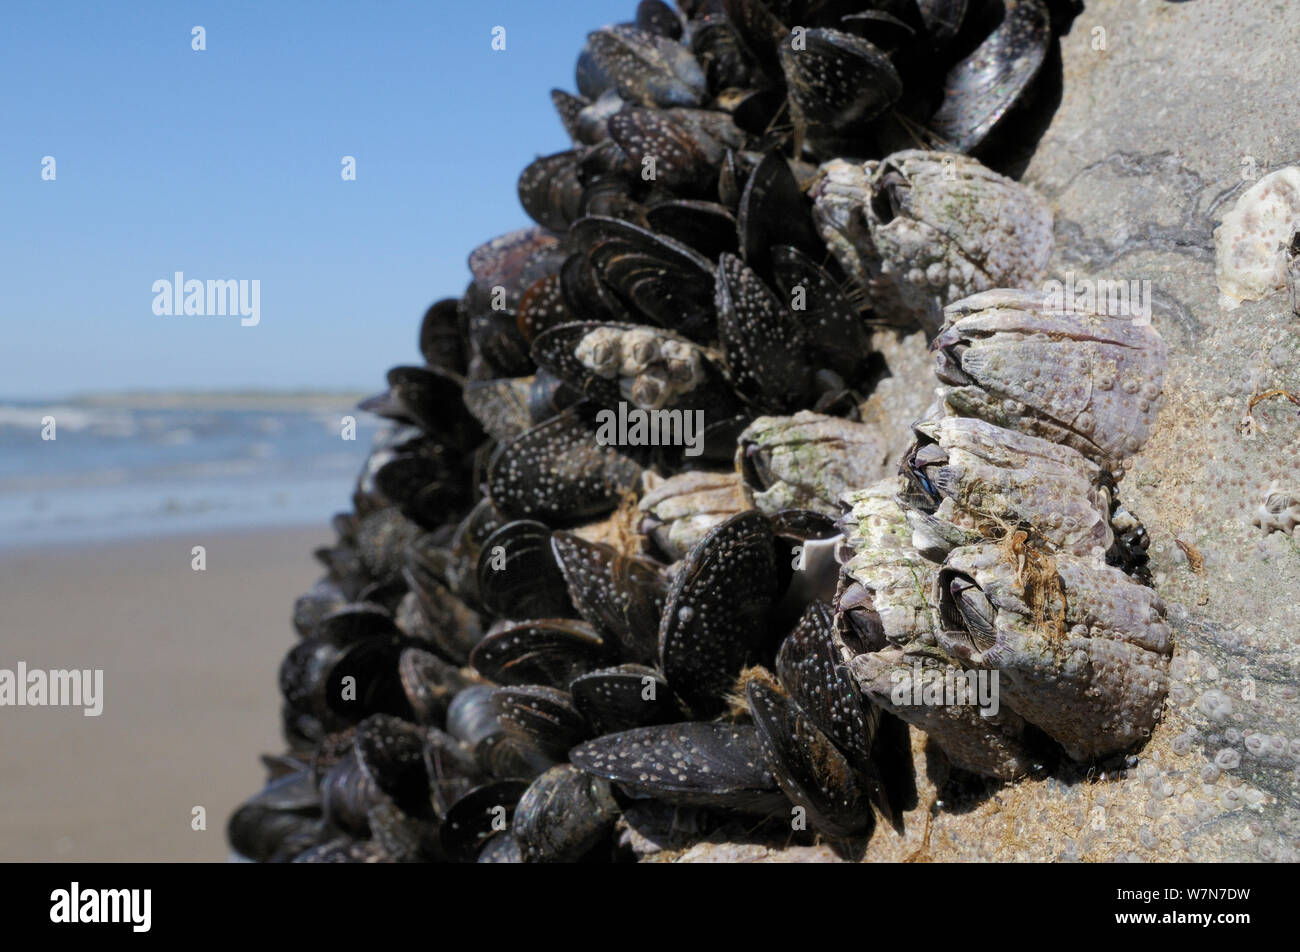 Ampio angolo di visione del Acorn barnacles (Balanus perforatus) attaccata a rocce accanto a comuni di Mitili (Mytilus edulis) con giovani cirripedi e recentemente risolta cyprid larvea nel processo di calcifying su roccia e su le cozze e barnacle conchiglie, esposti a bassa sul litorale con la bassa marea. Rhossili, La Penisola di Gower, UK, Luglio. Foto Stock